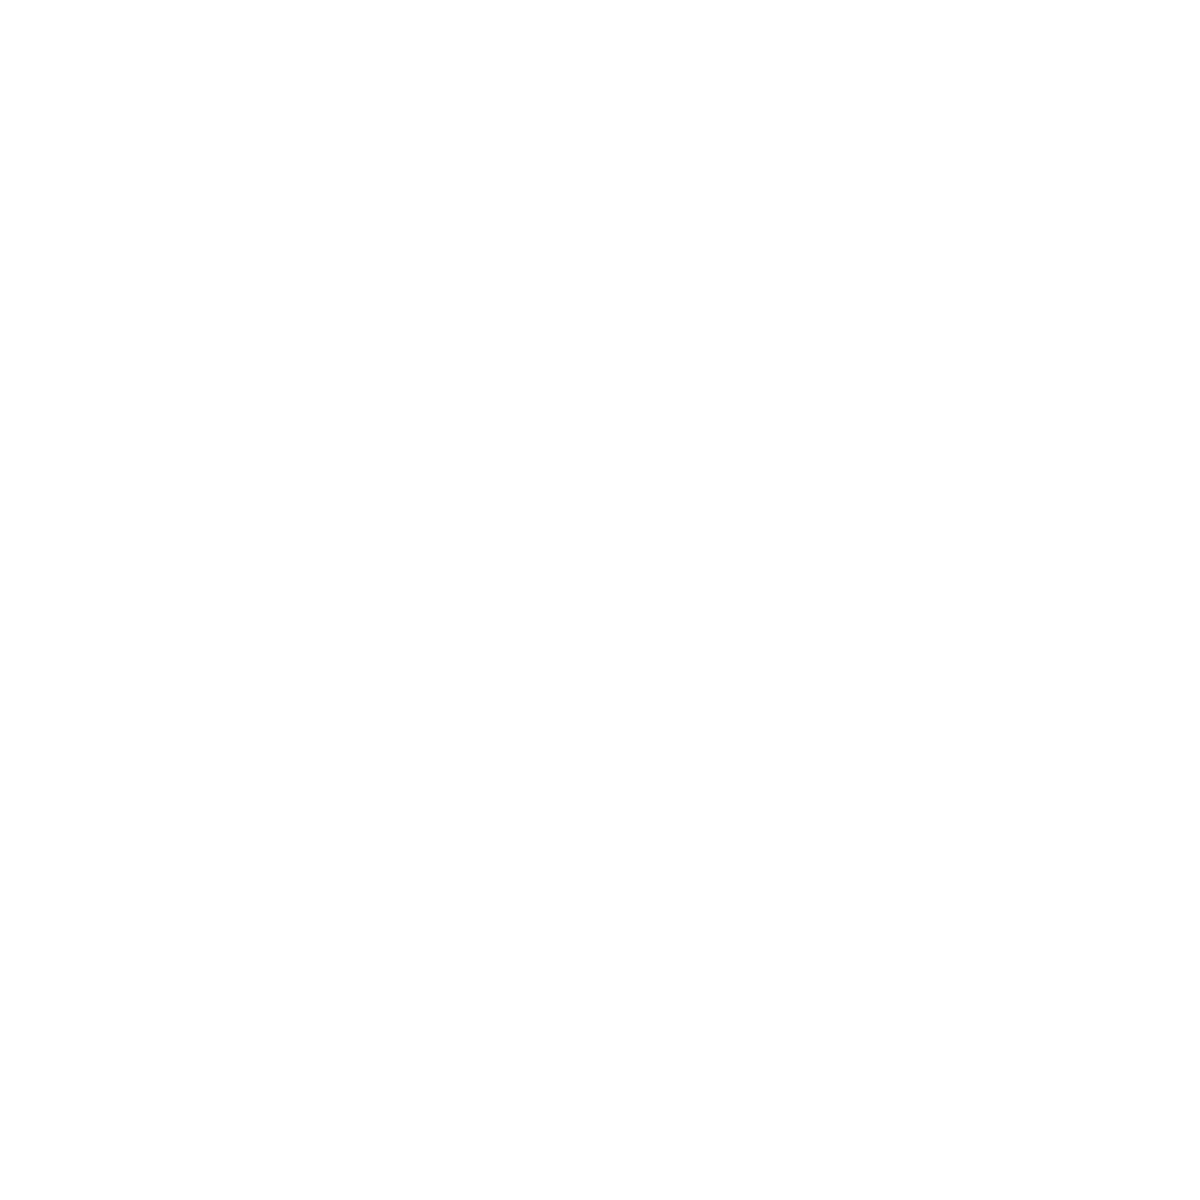 deadly avenger white